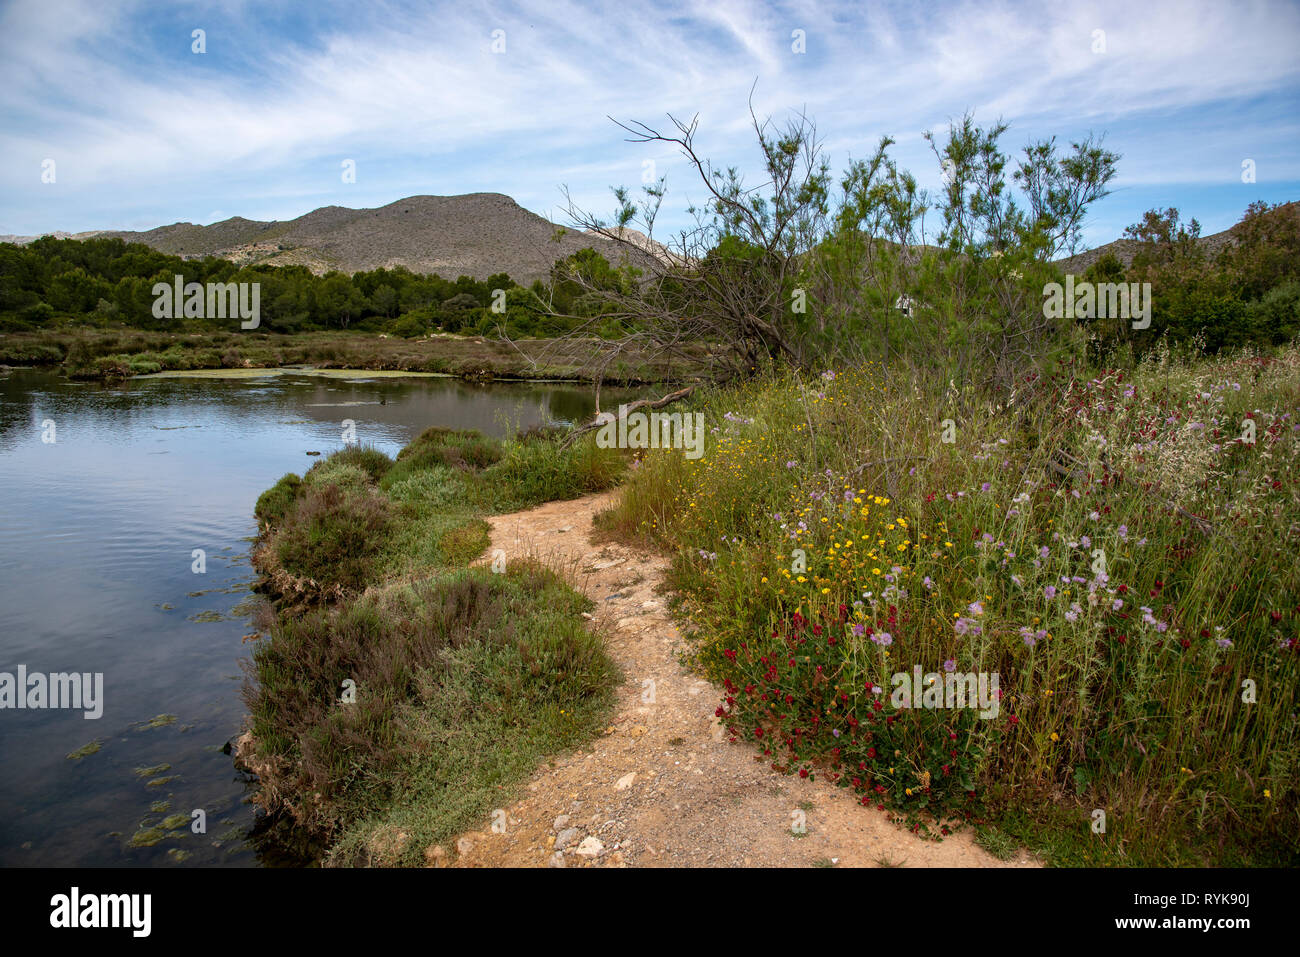 El parque natural de la Gola,un pequeño humedal situado en Puerto Pollensa town, Mojorca, España. Foto de stock